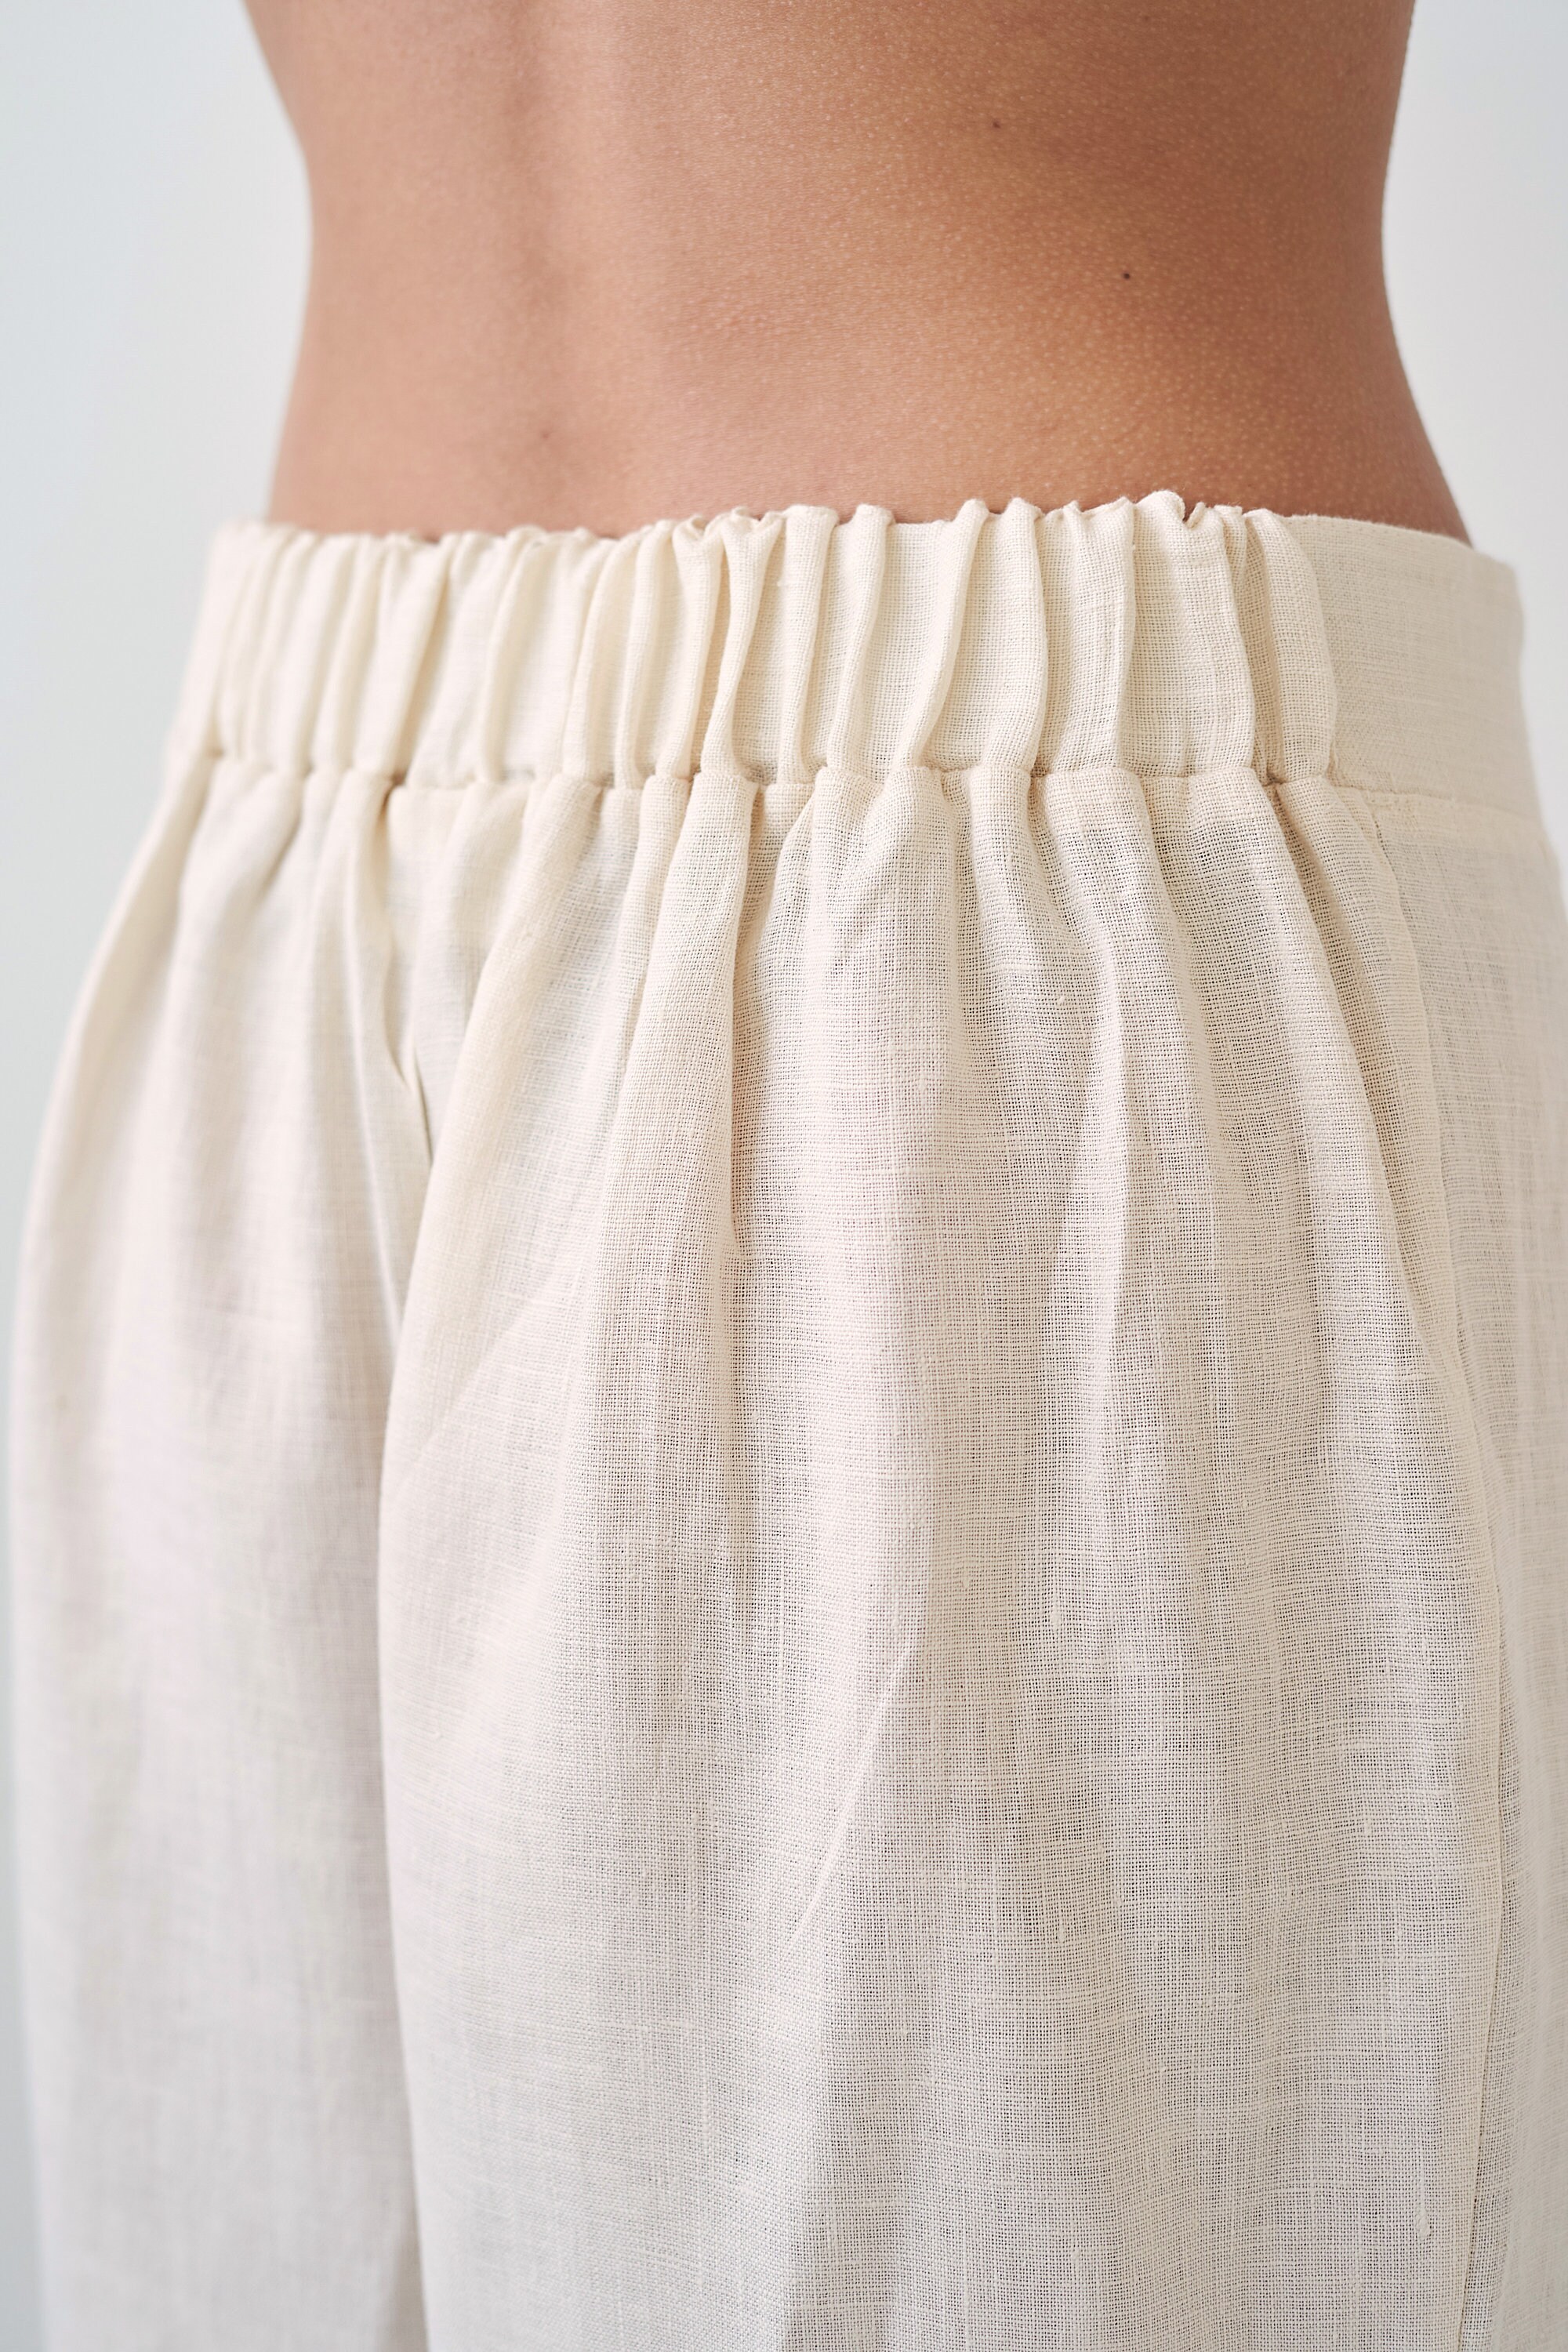 Linen Pants RILEY, Linen Crop Pants, Summer Linen Pants, Relaxed